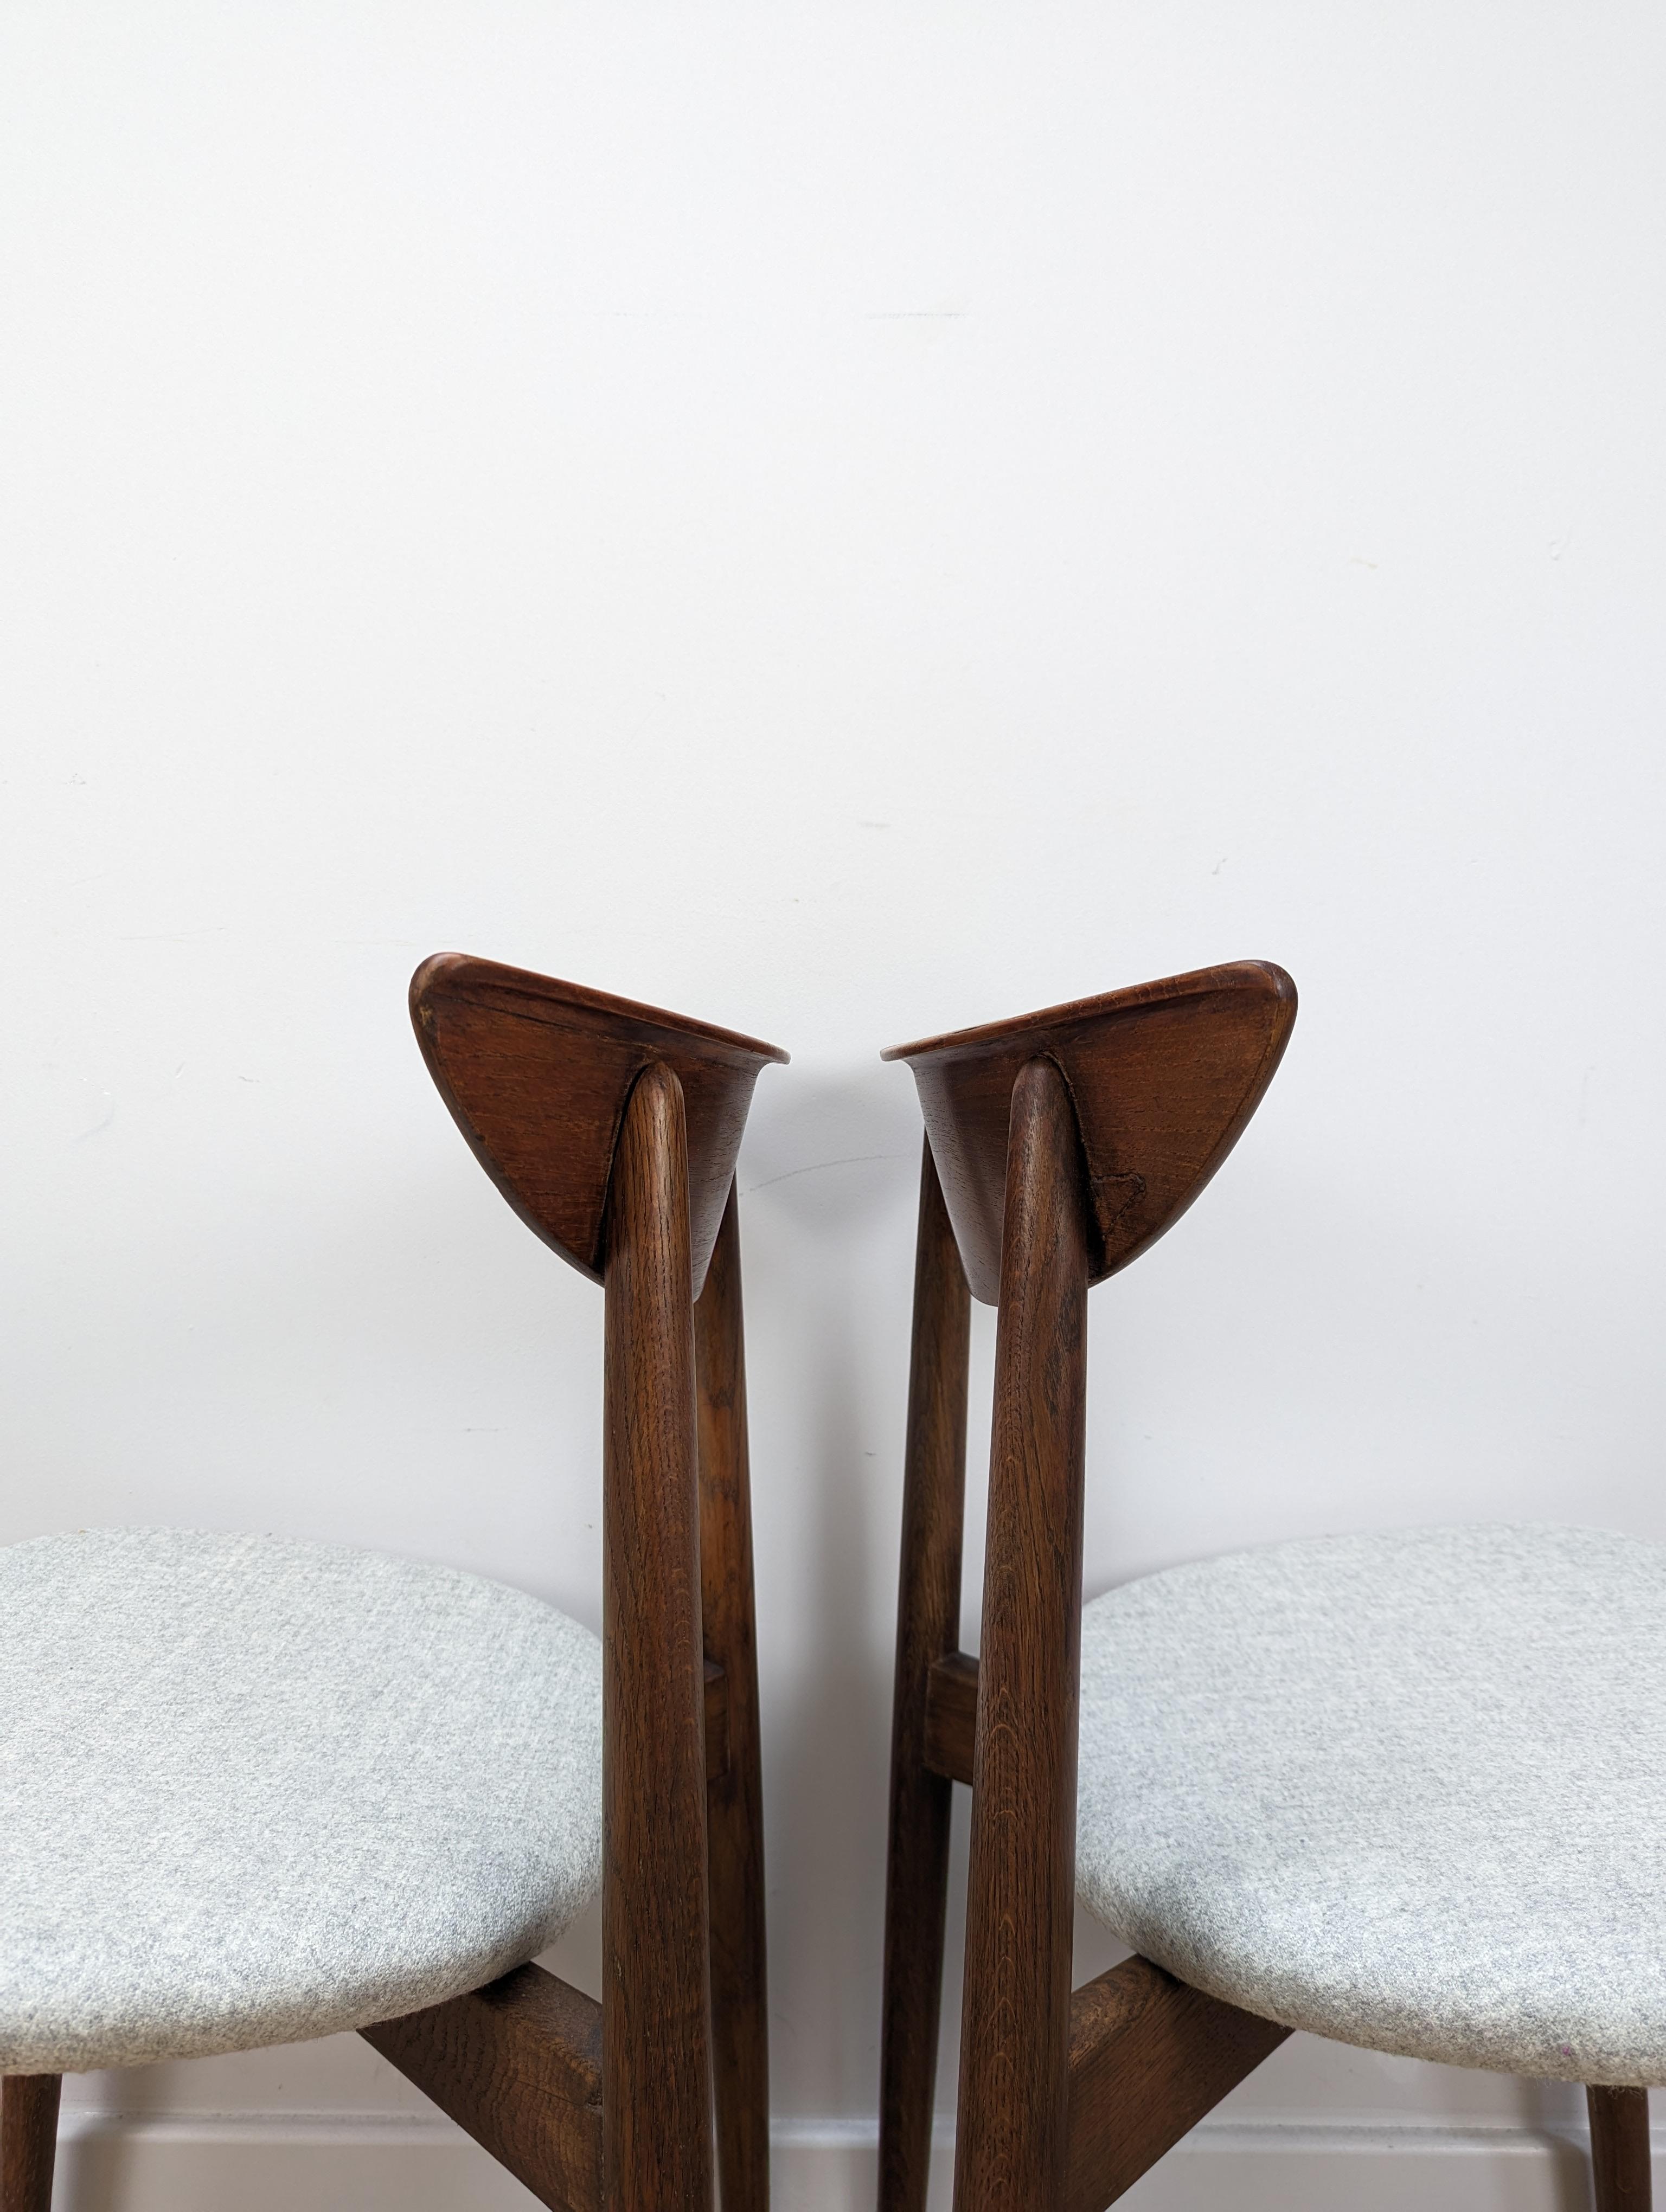 Cette paire de chaises en teck conçues par Harry Østergaard pour Randers Møbelfabrik est intemporelle avec un dossier magnifiquement sculpté et des pieds évasés. Il en résulte une chaise élégante et incroyablement confortable.

Les chaises ont été